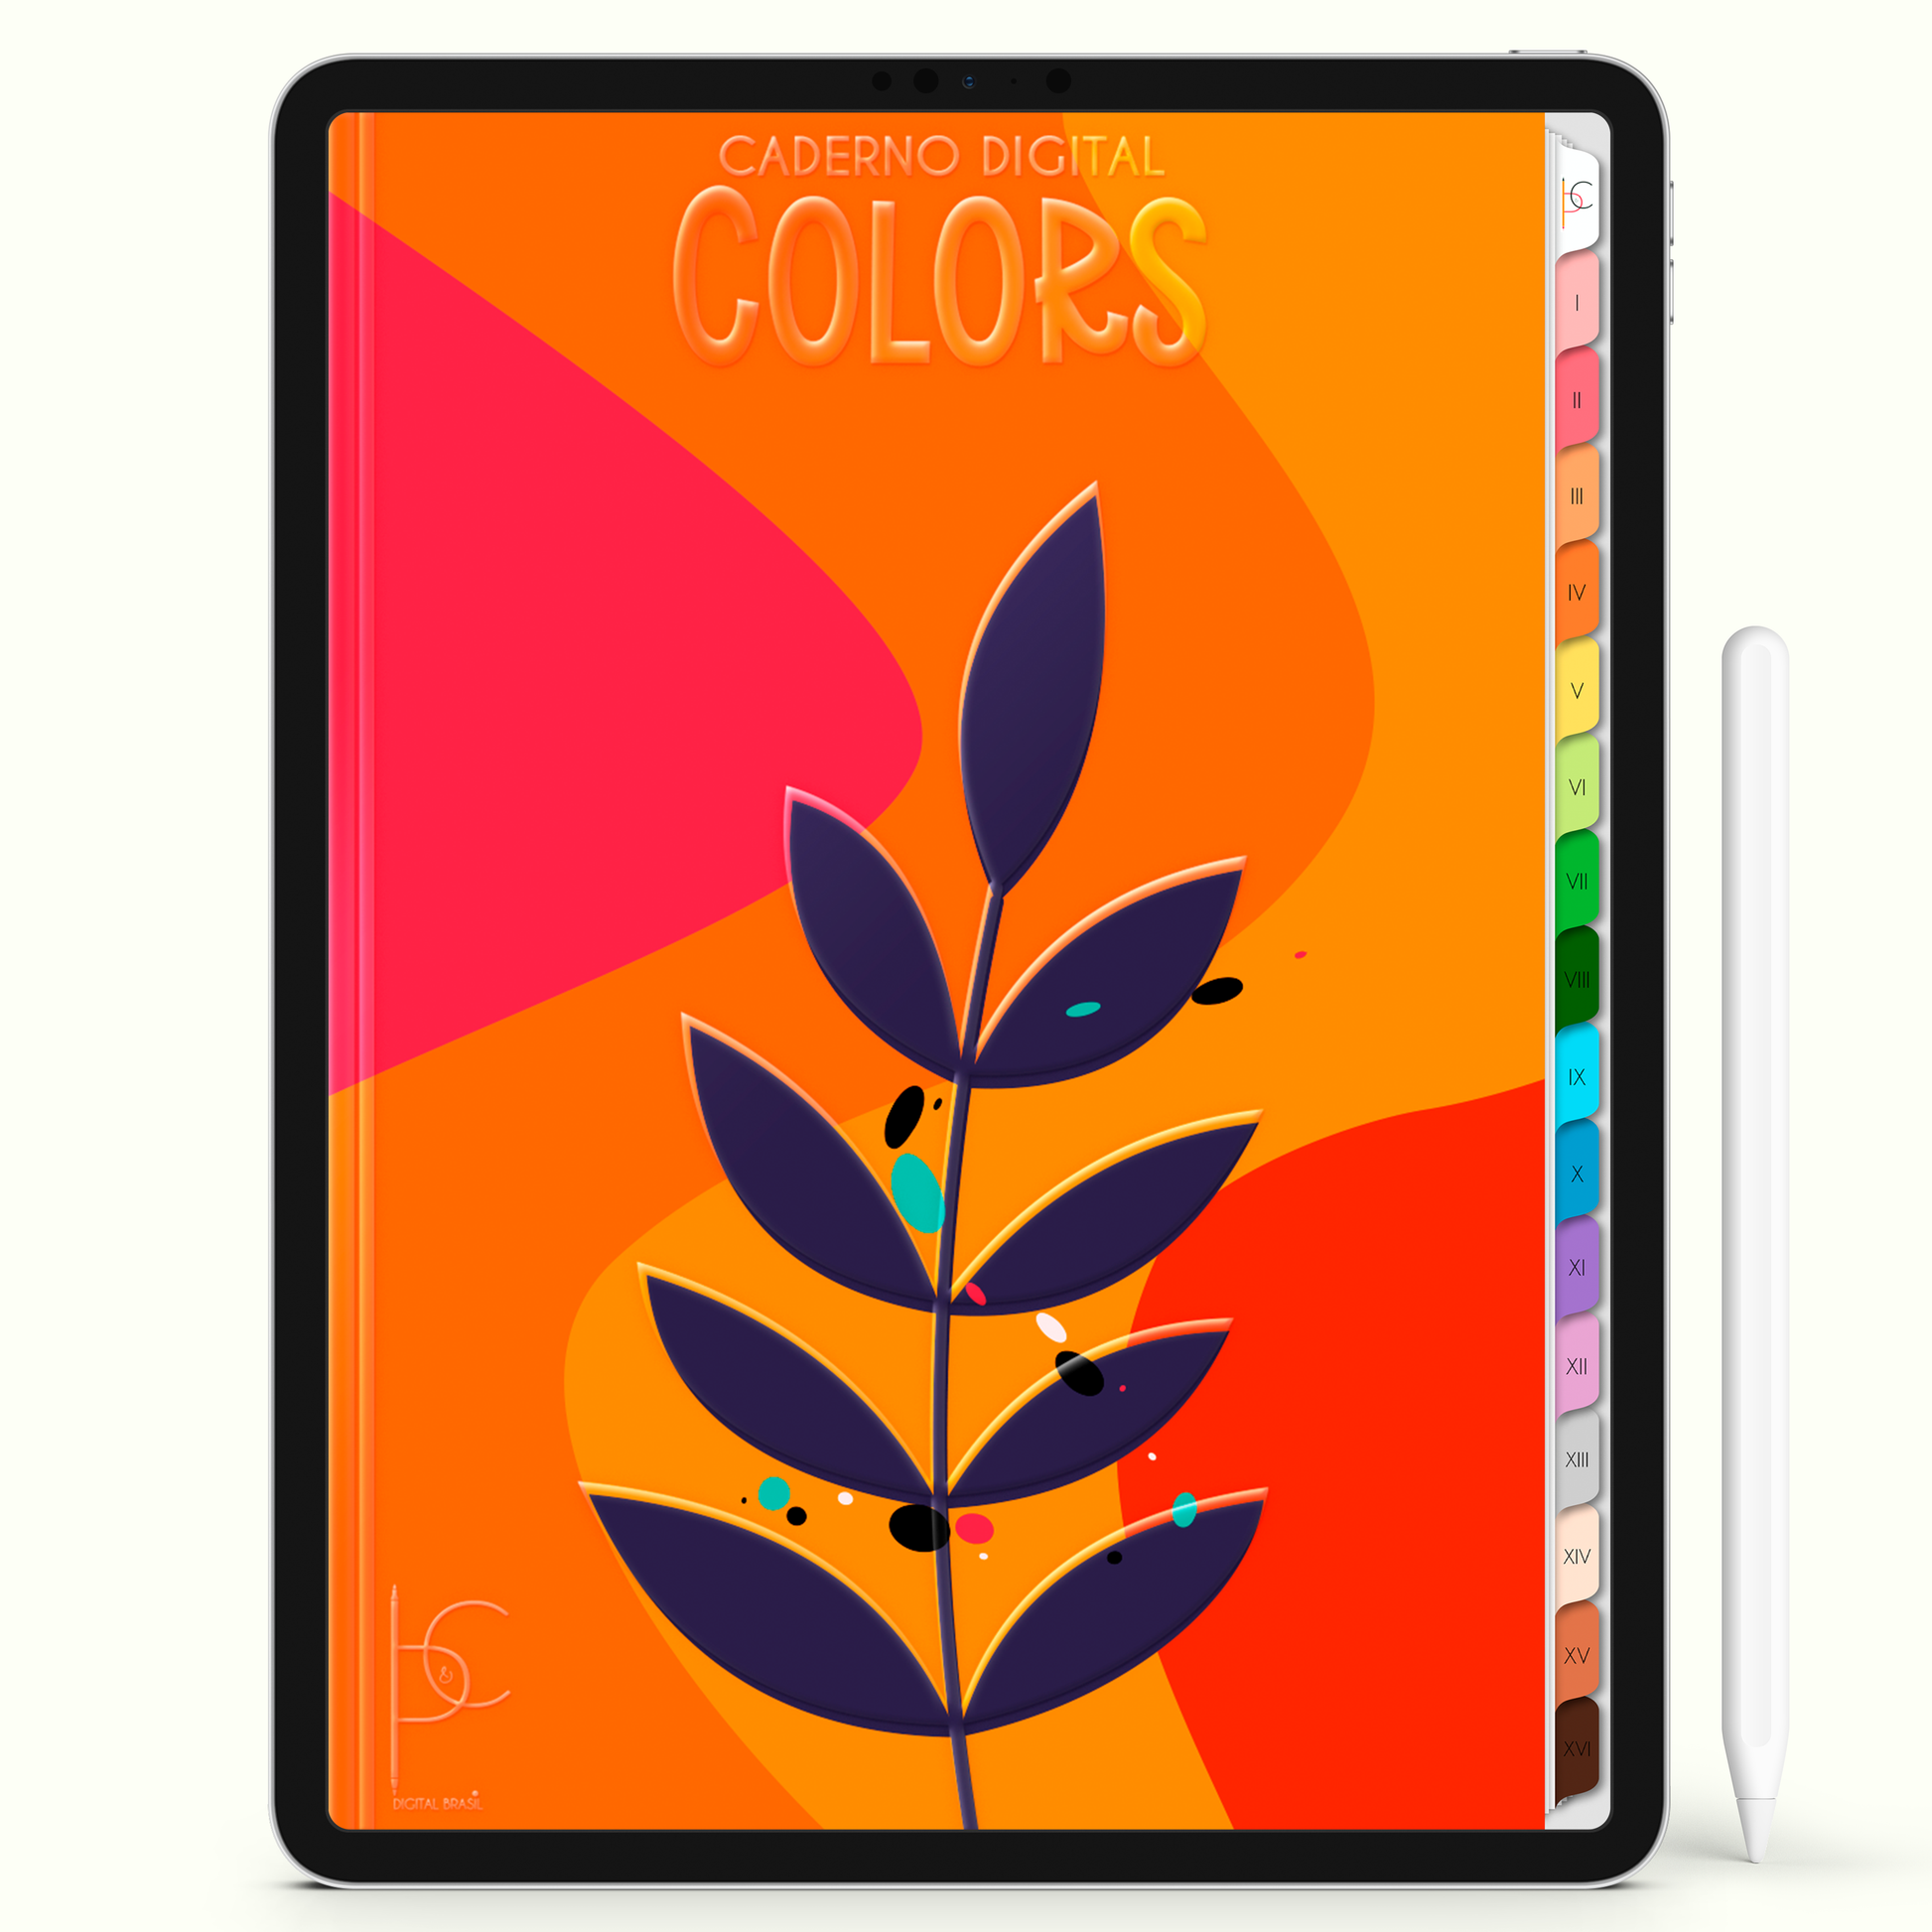 Caderno Digital Colors Anotações Verão Tropical 16 Matérias • Para iPad e Tablet Android • Download instantâneo • Sustentável